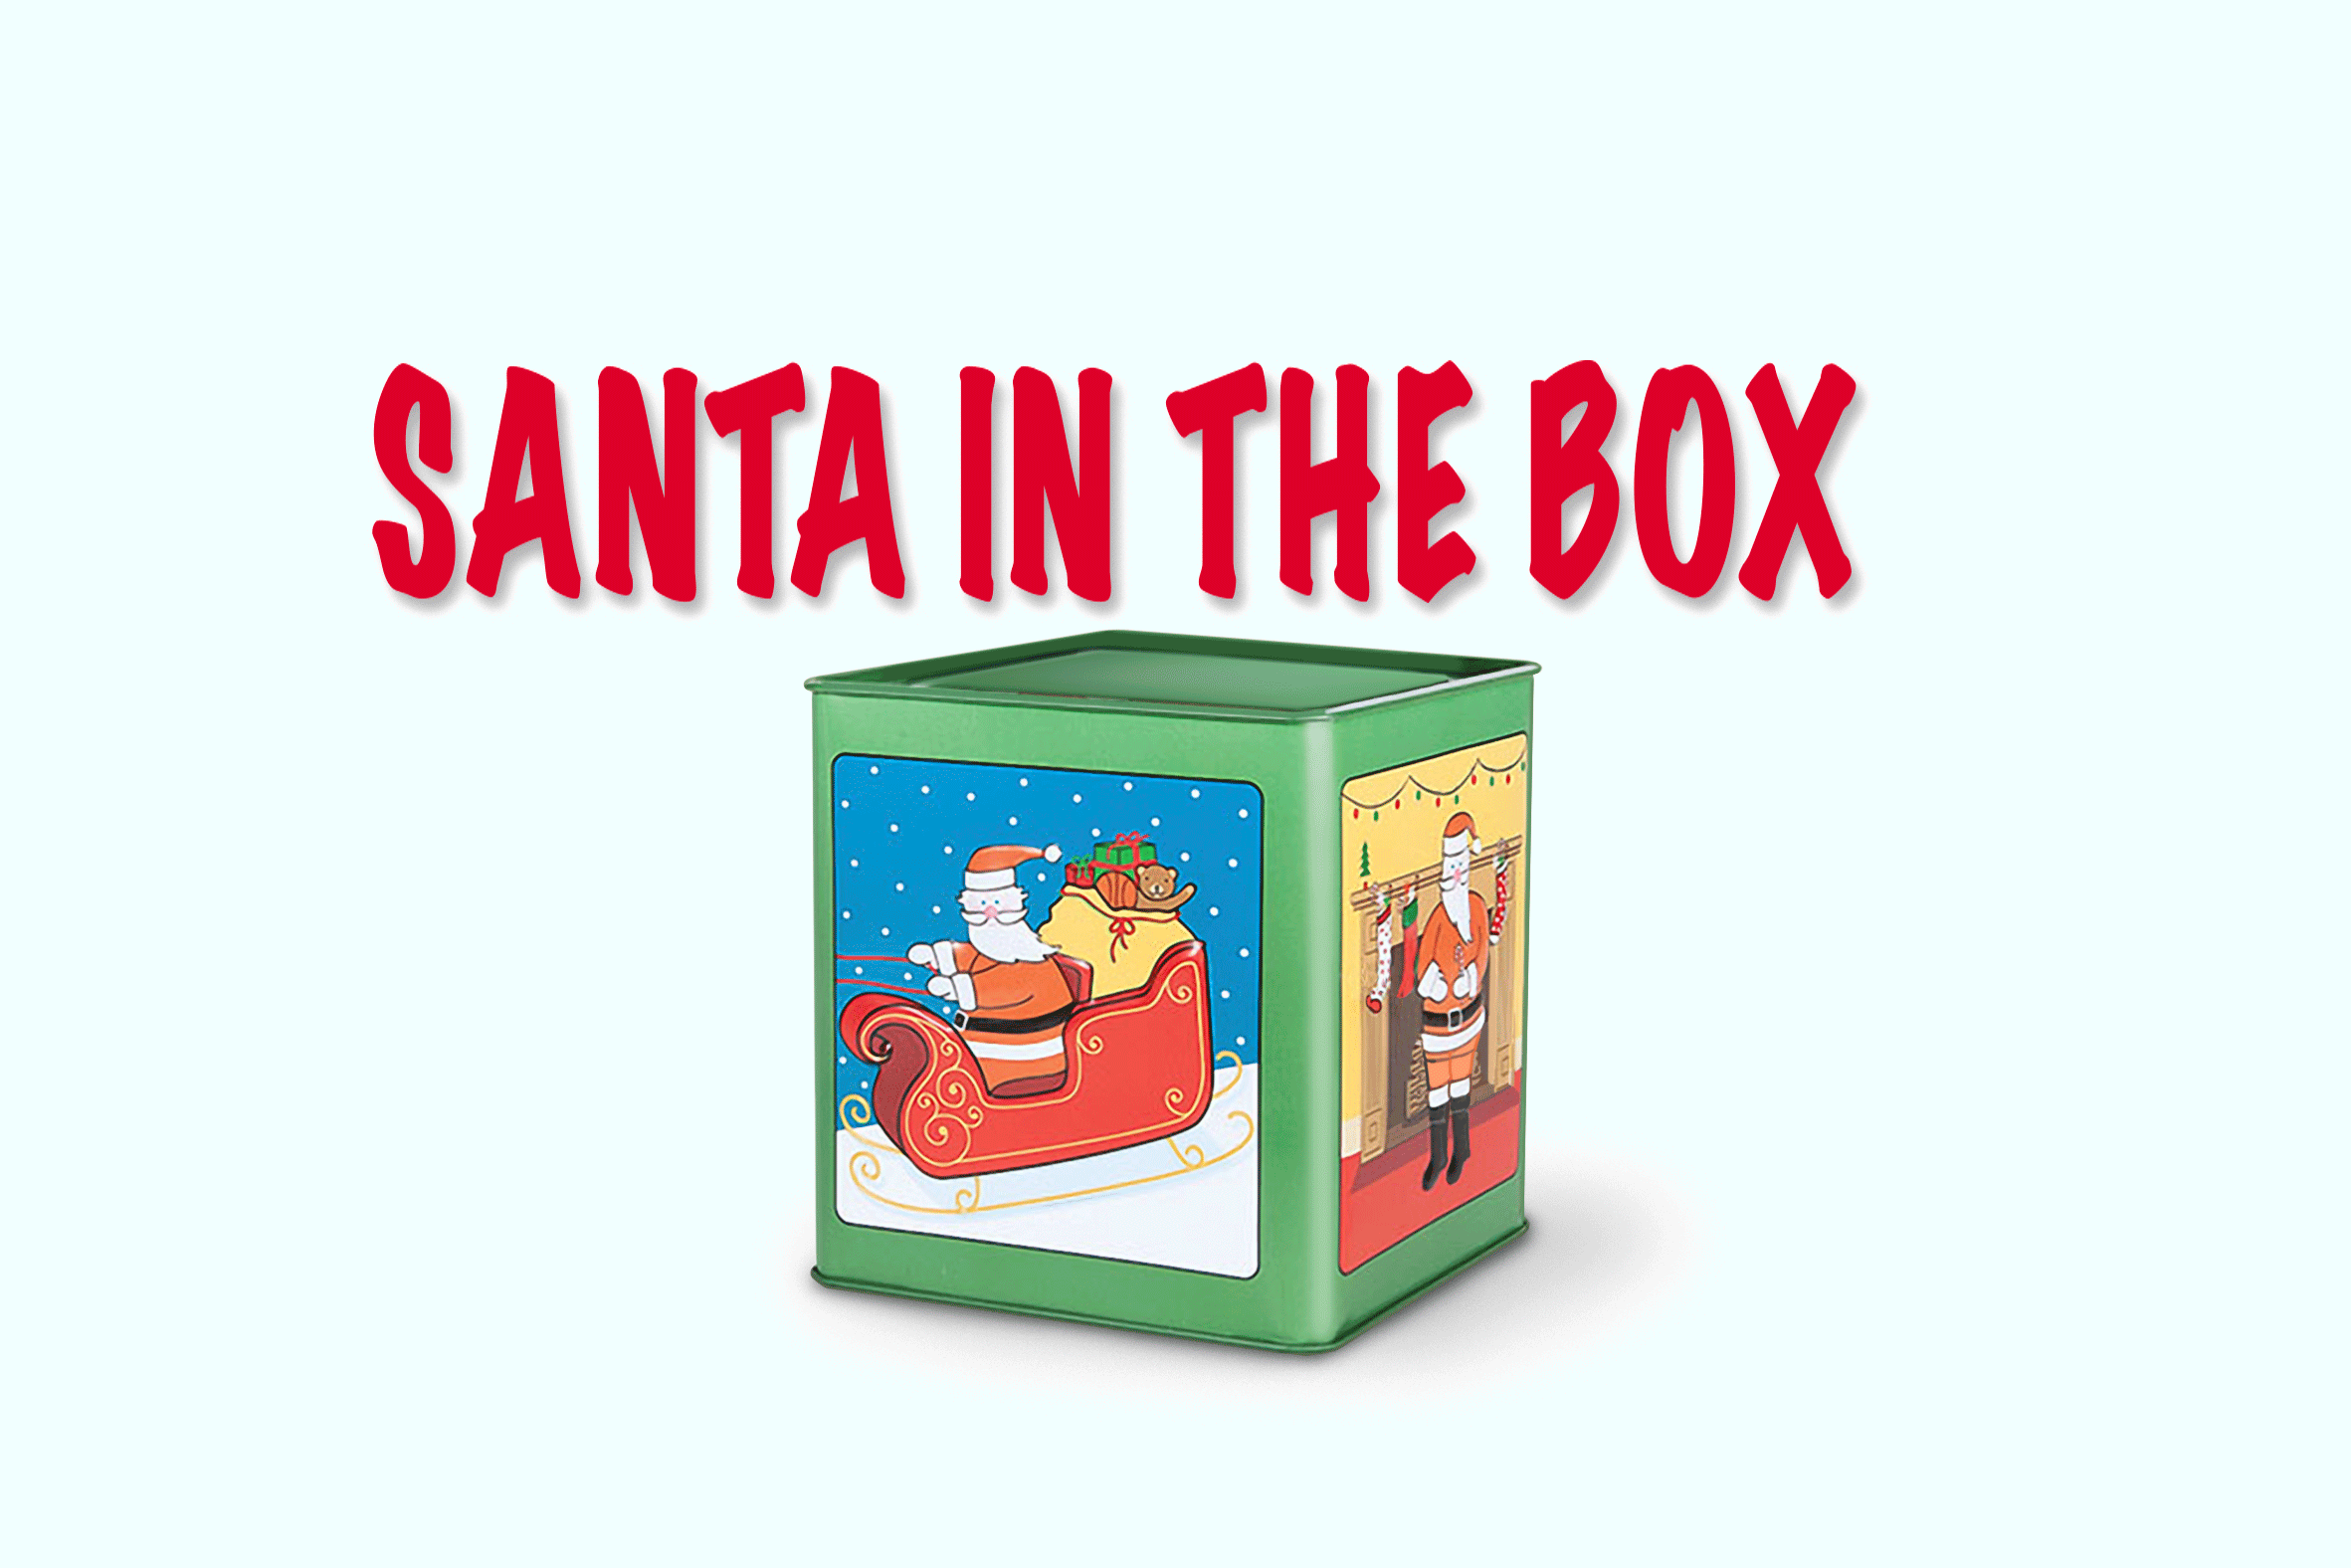 MOVE SANTA IN THE BOX